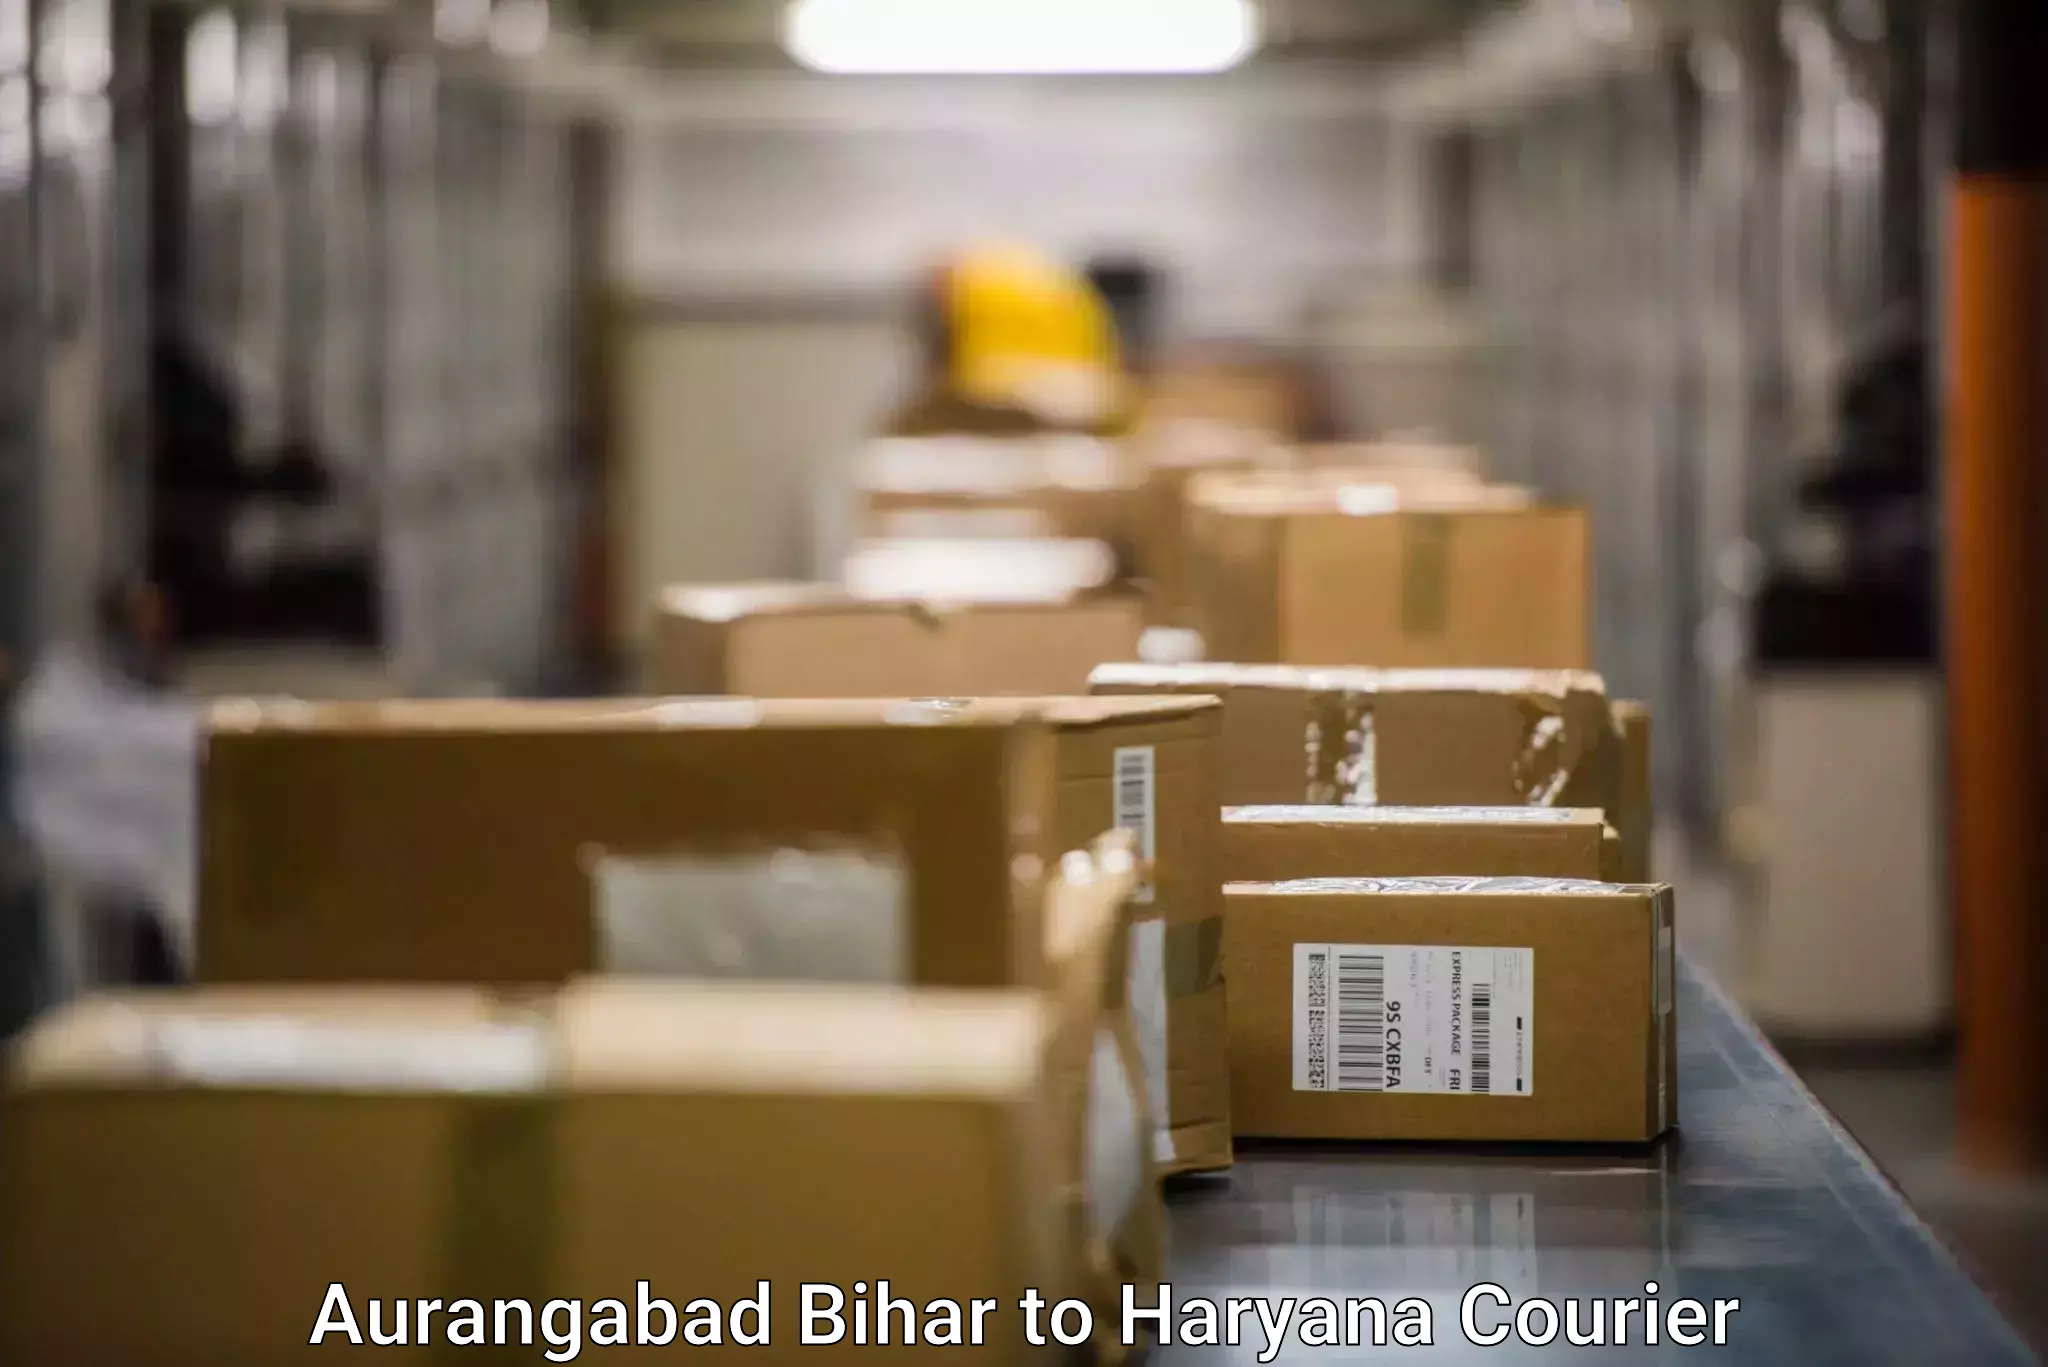 Courier tracking online Aurangabad Bihar to Ratia